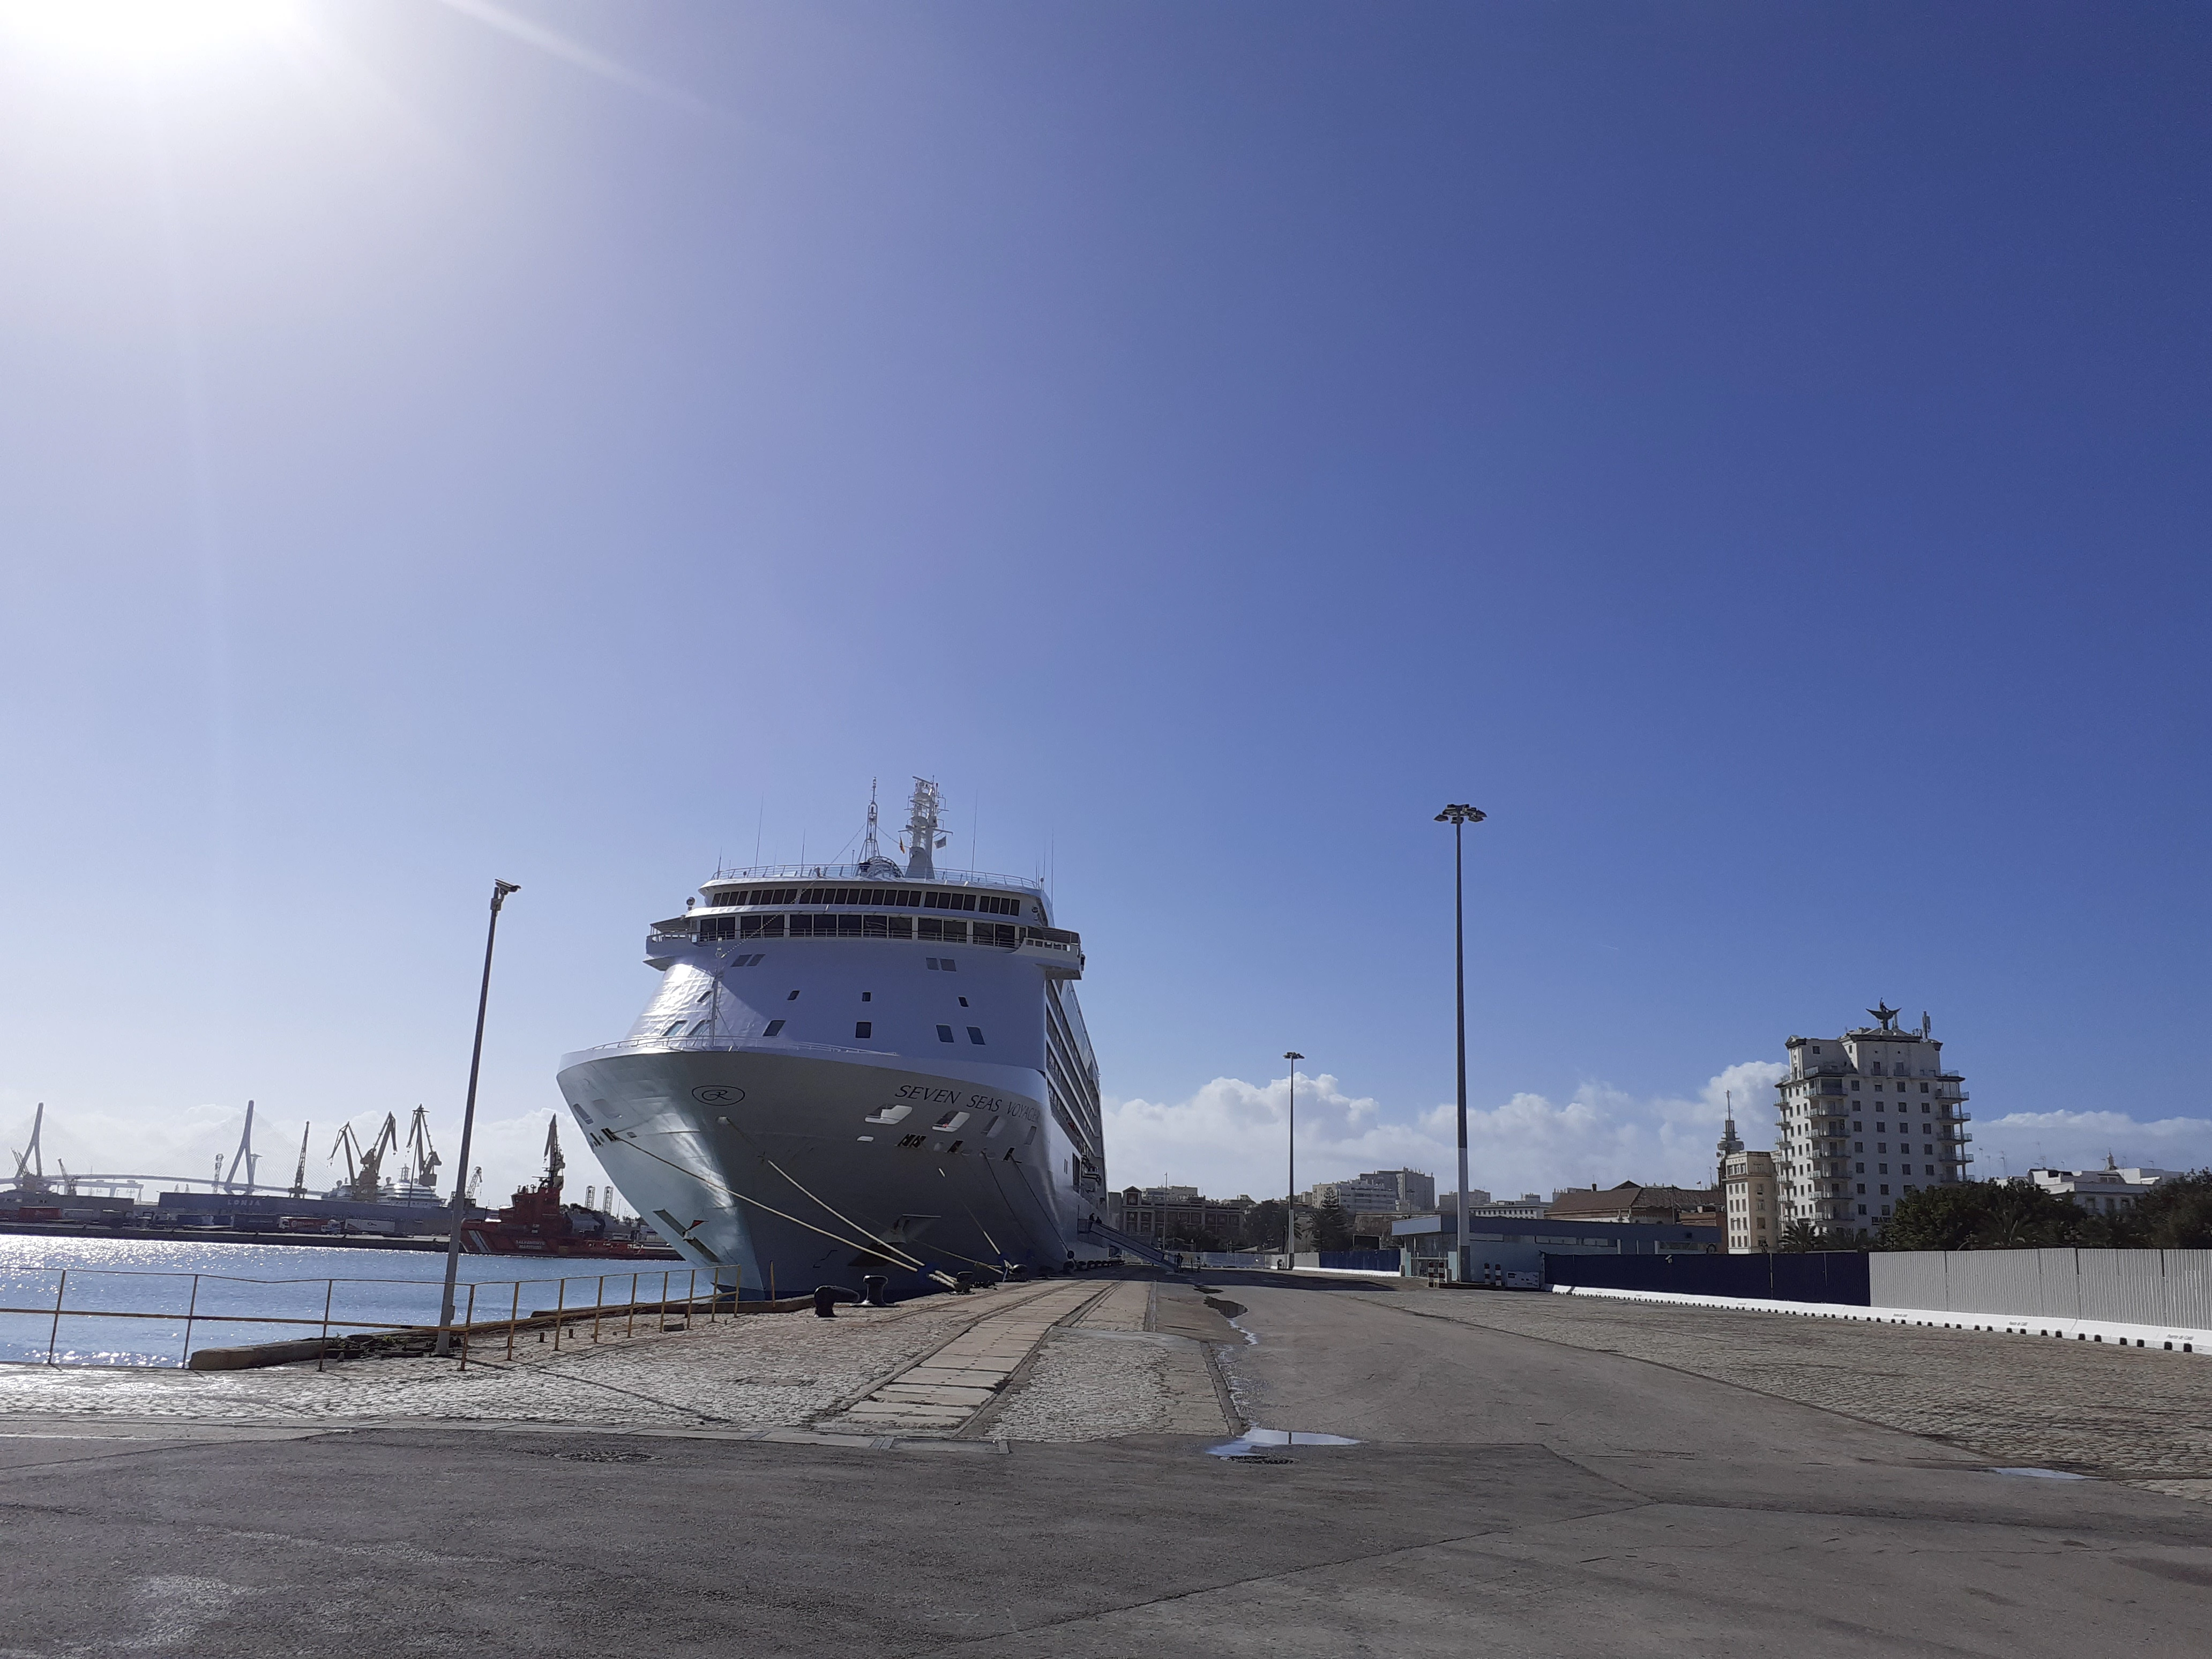 El súper lujo atraca en el puerto de Cádiz